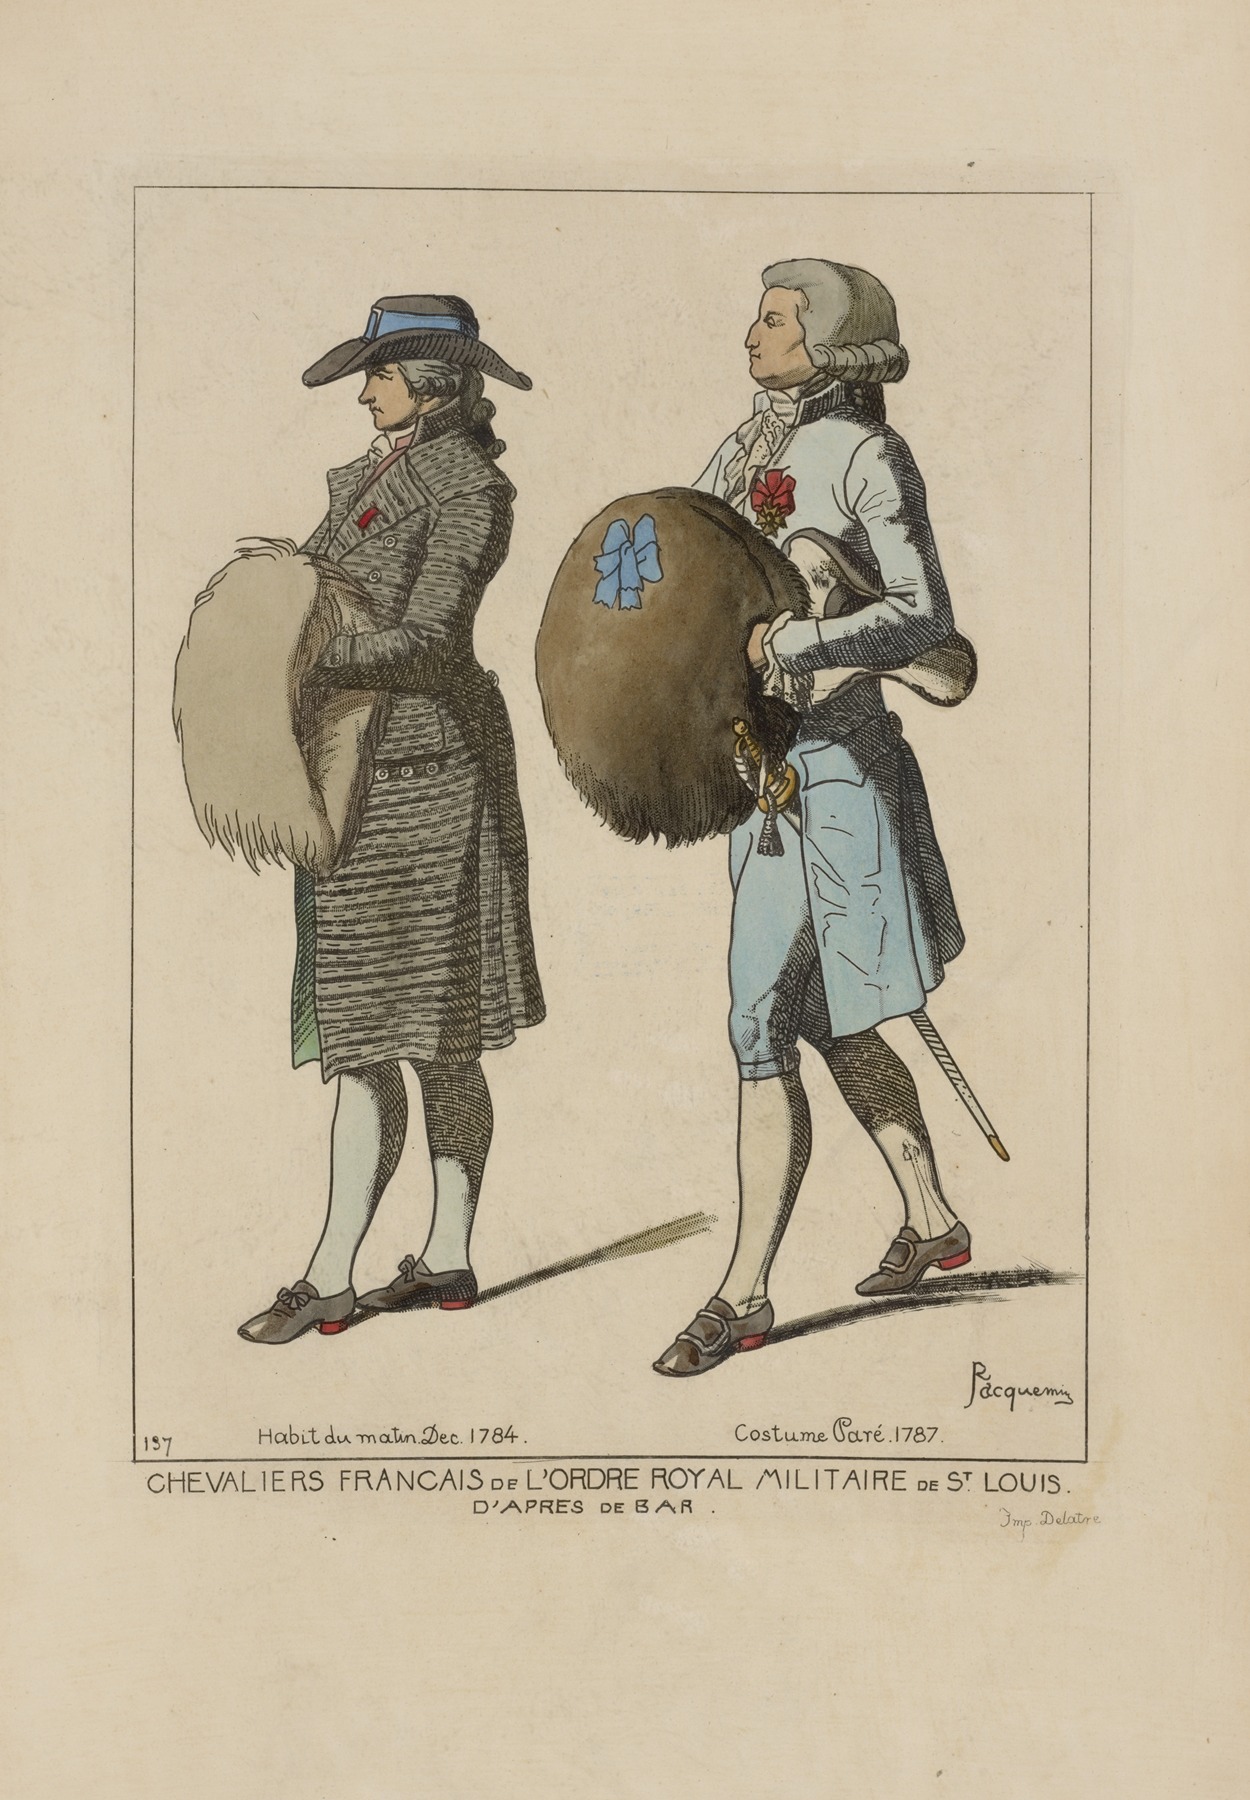 Raphaël Jacquemin - Chevaliers Francais de l’ordre royal militaire de St. Louis. D’apres de Bar. Habit du matin Dec. 1784. Costume Paré 1787.